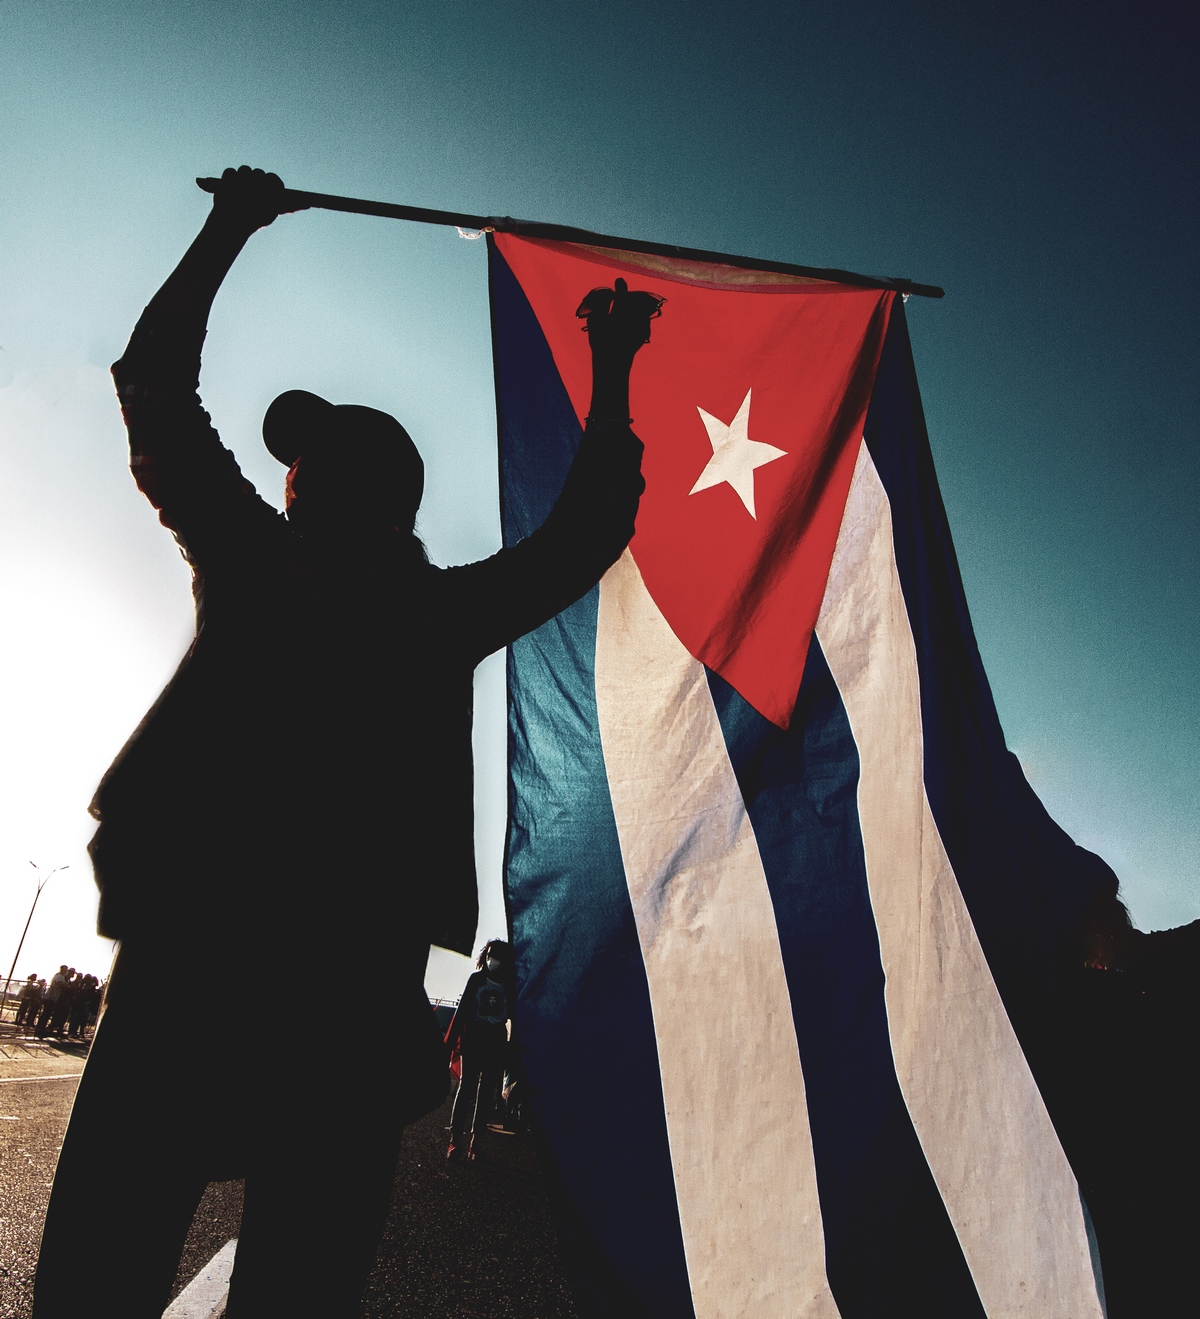 Las voces de los cubanos se alzan en defensa de nuestra soberanía y paz